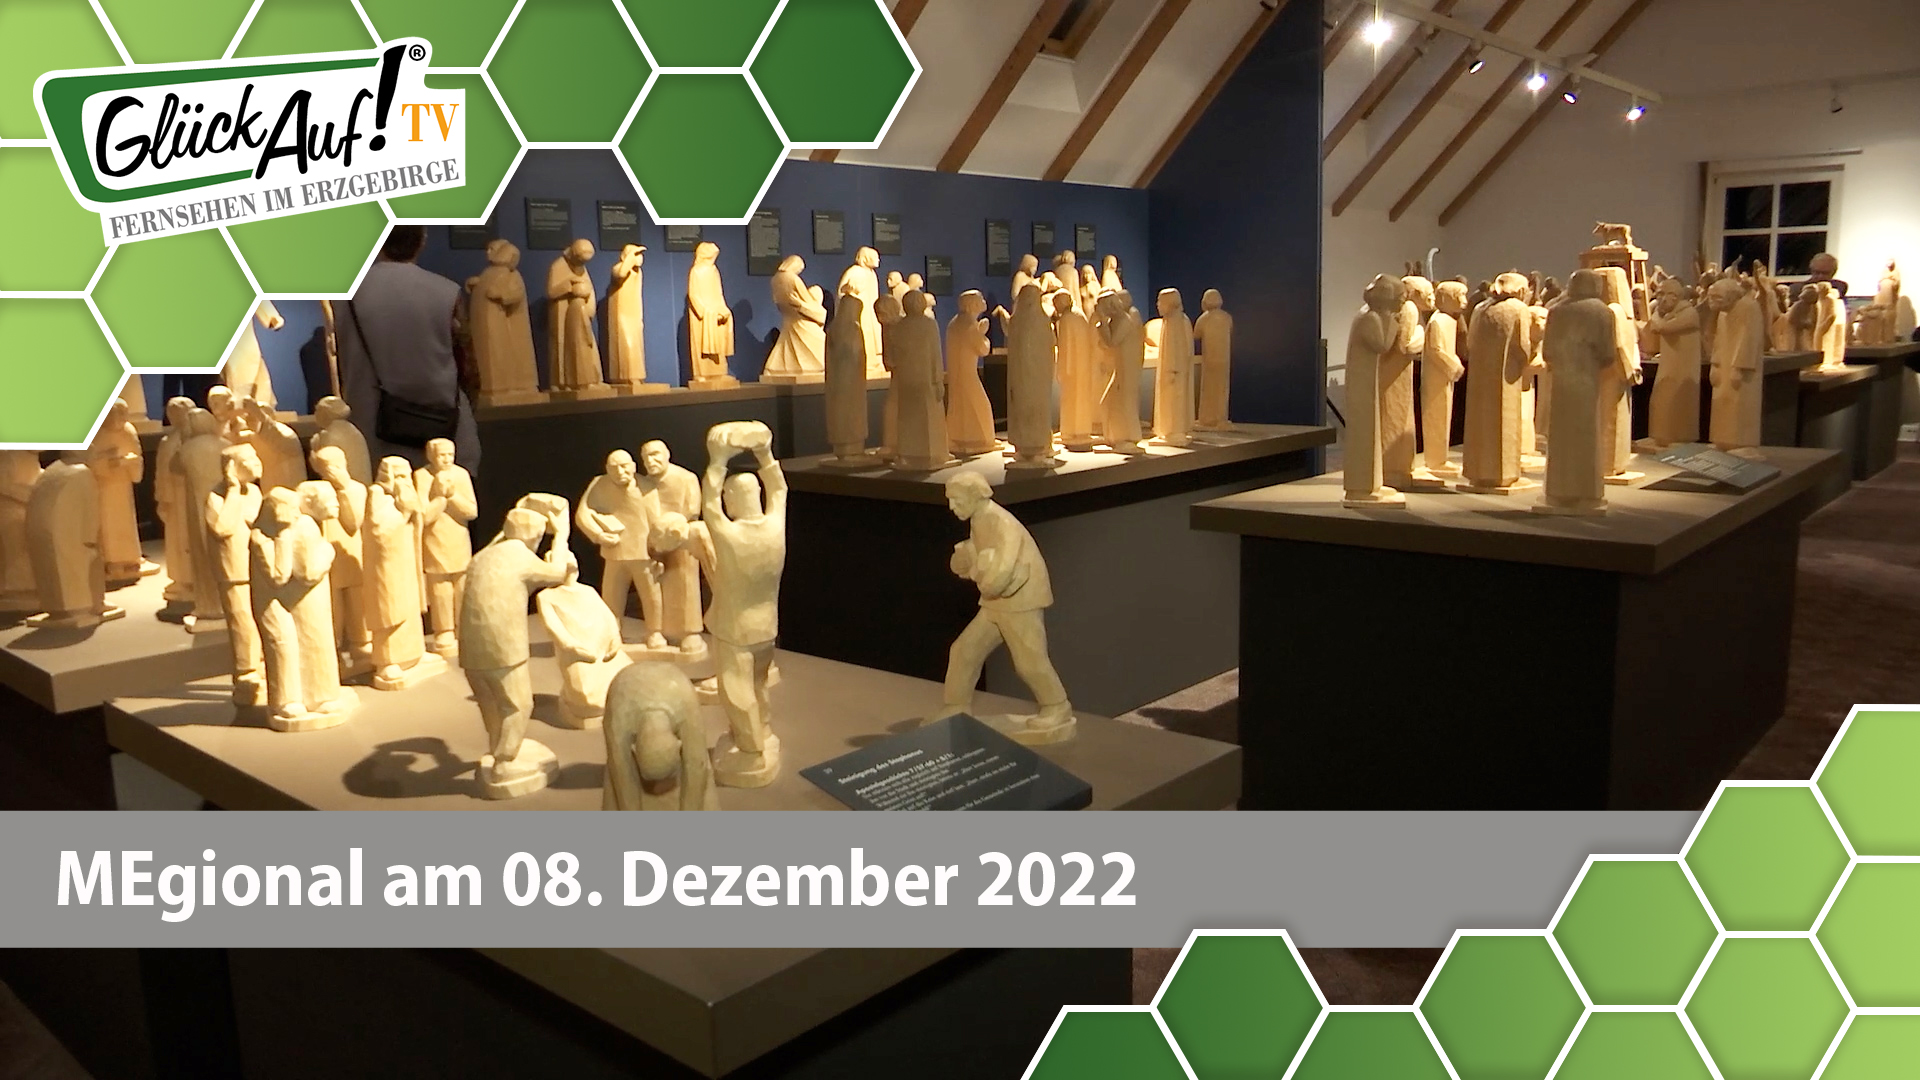 MEgional am 08. Dezember 2022 - mit 25 Jahre Galerie Die Hütte in Pobershau